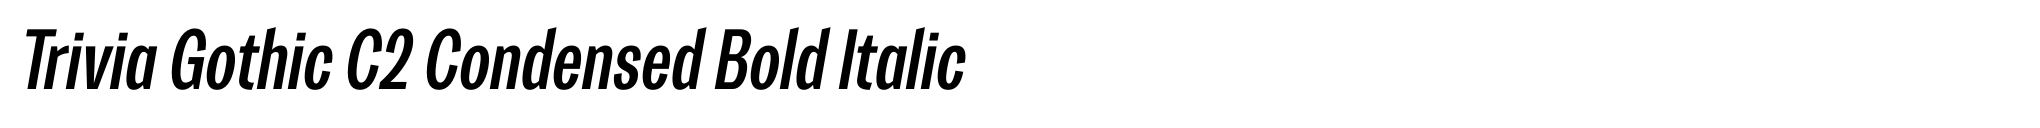 Trivia Gothic C2 Condensed Bold Italic image